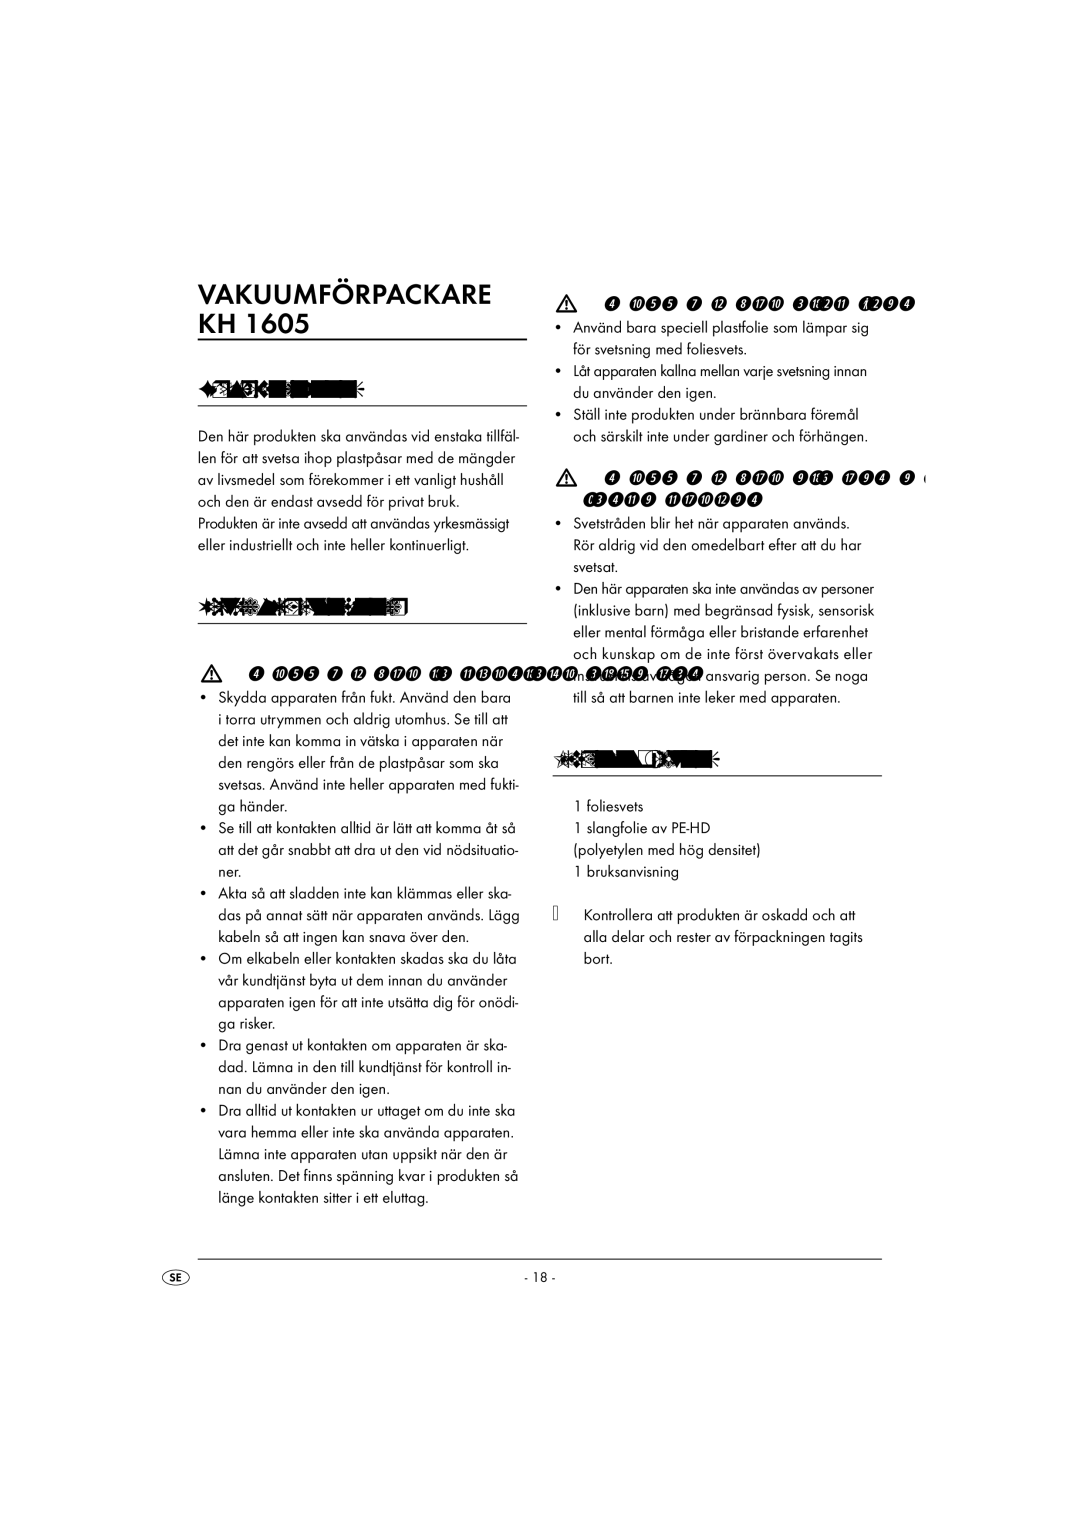 Kompernass KH 1605 manual Vakuumförpackare KH, Föreskriven användning, Viktiga säkerhetsanvisningar, Leveransens omfattning 